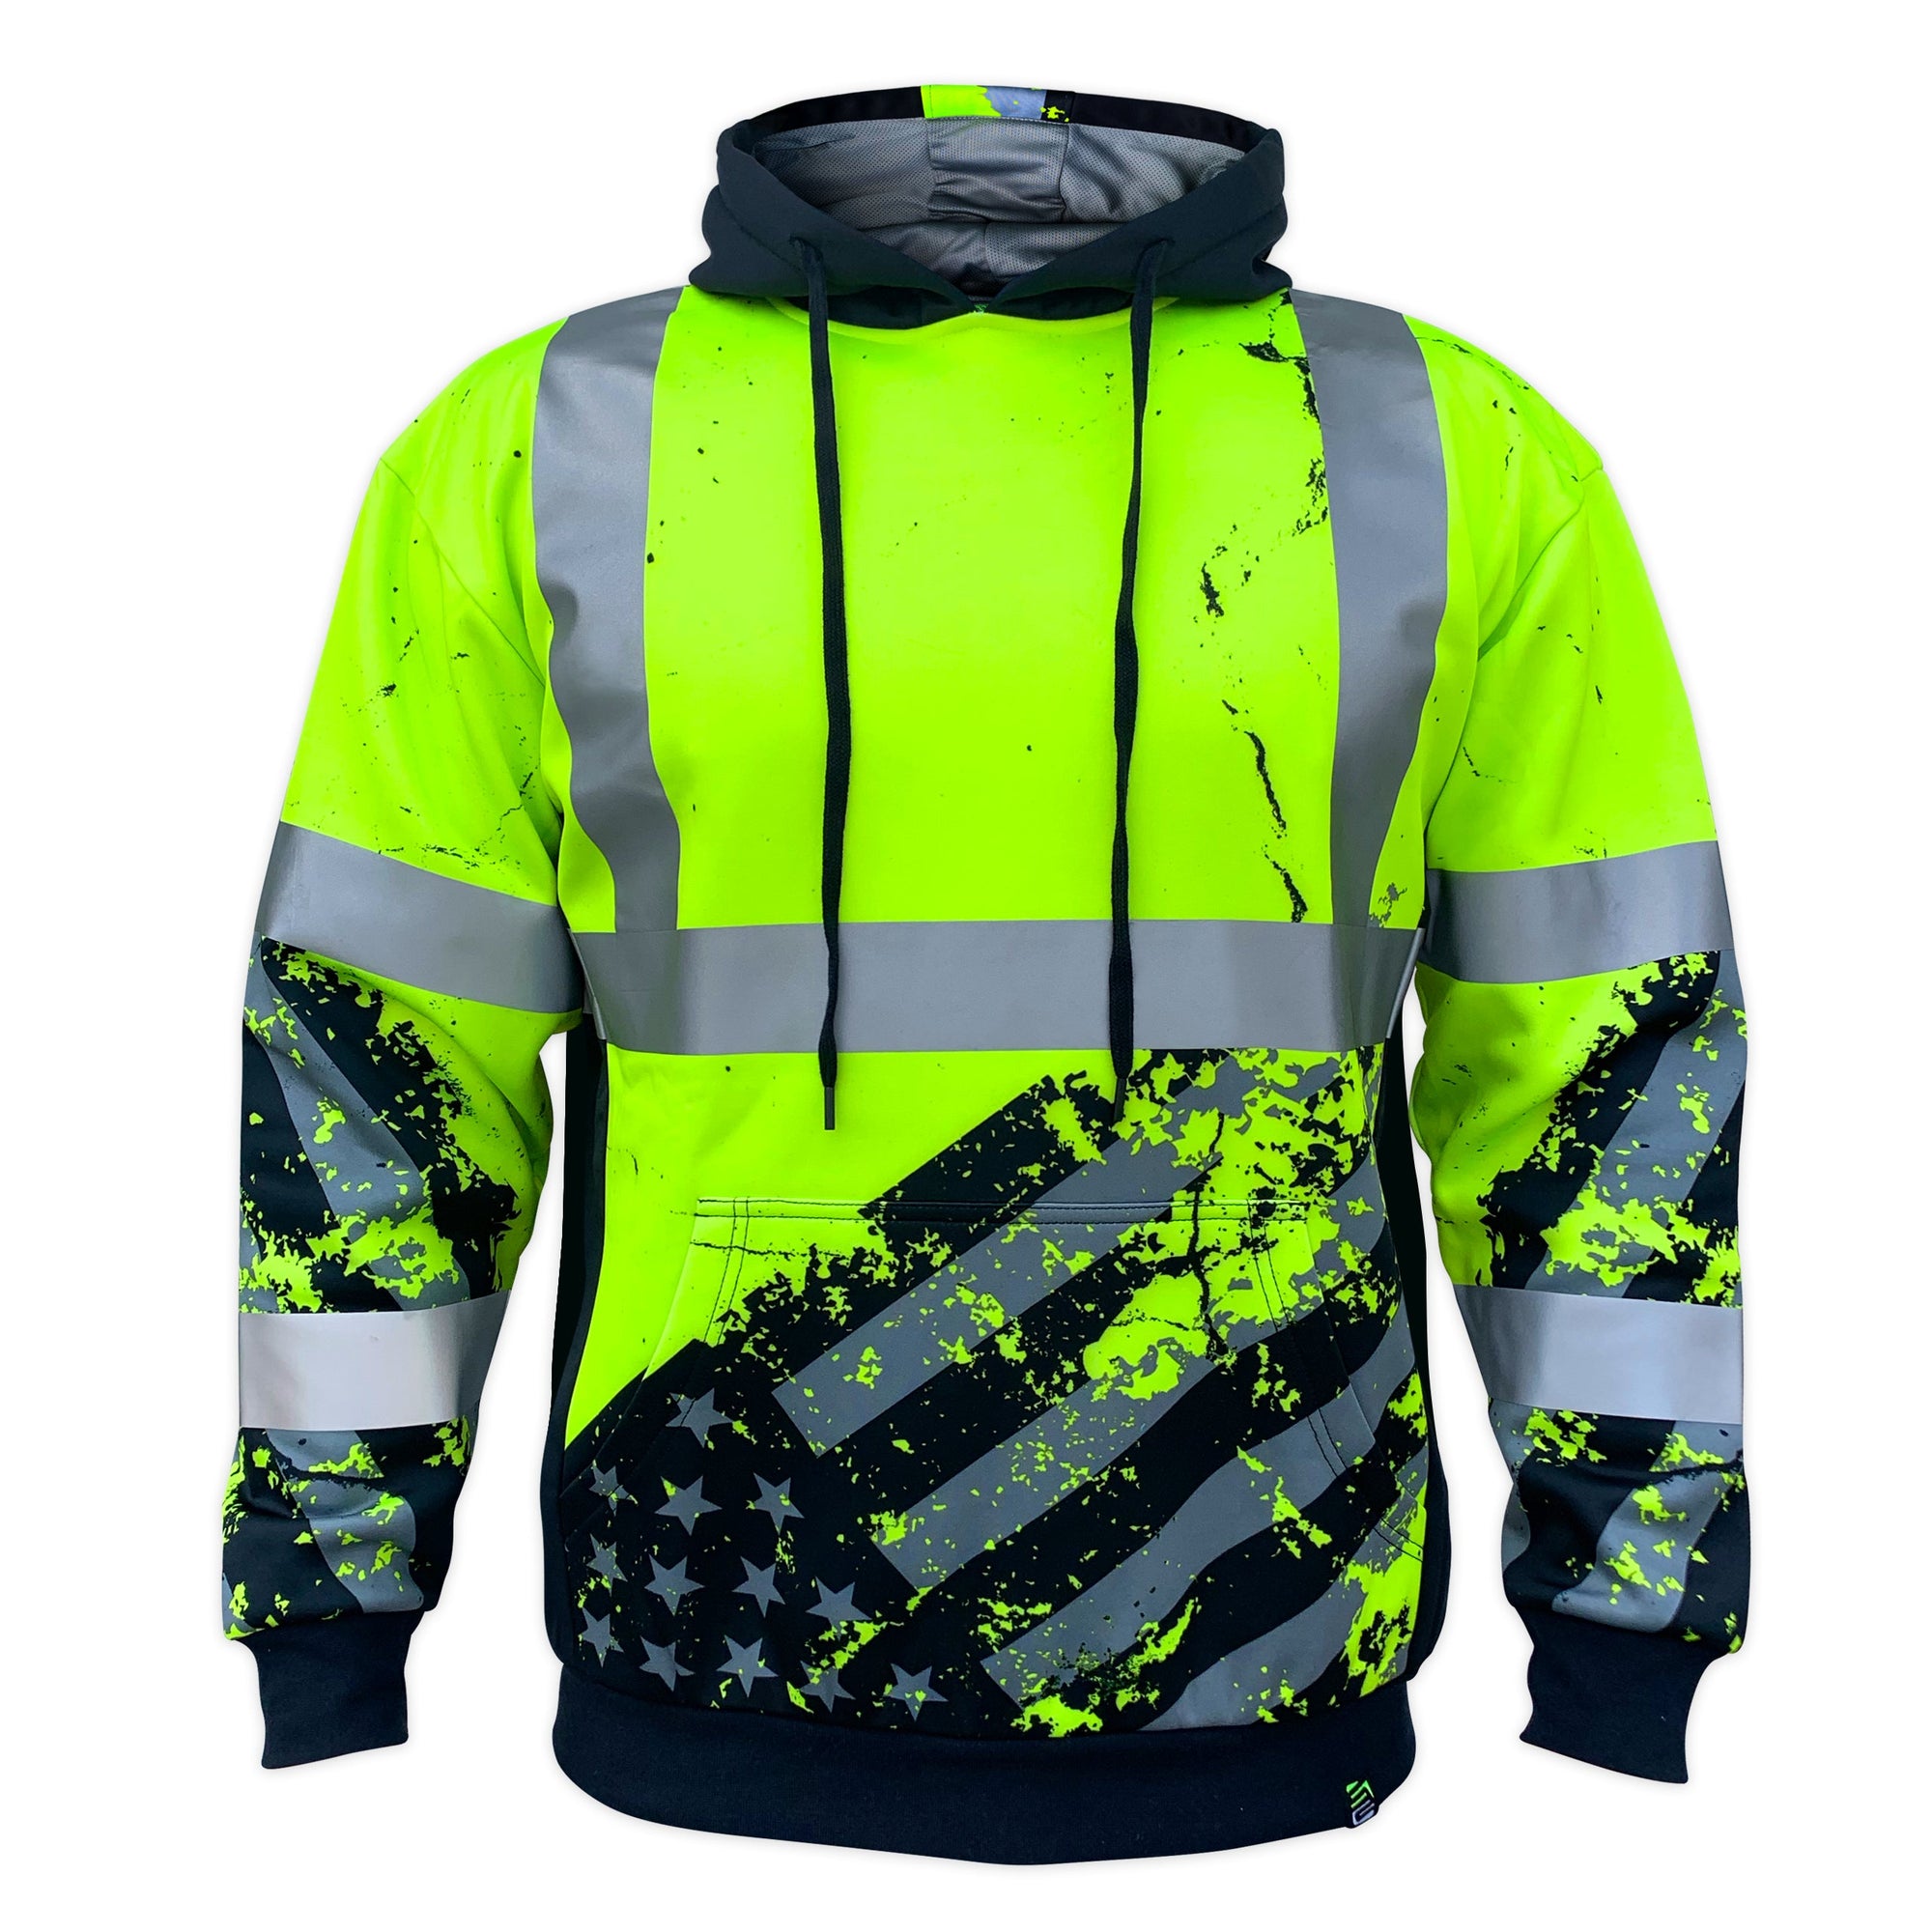 SafetyShirtz Men's SS360° American Grit Class 3 Safety Hoodie - Work World - Workwear, Work Boots, Safety Gear